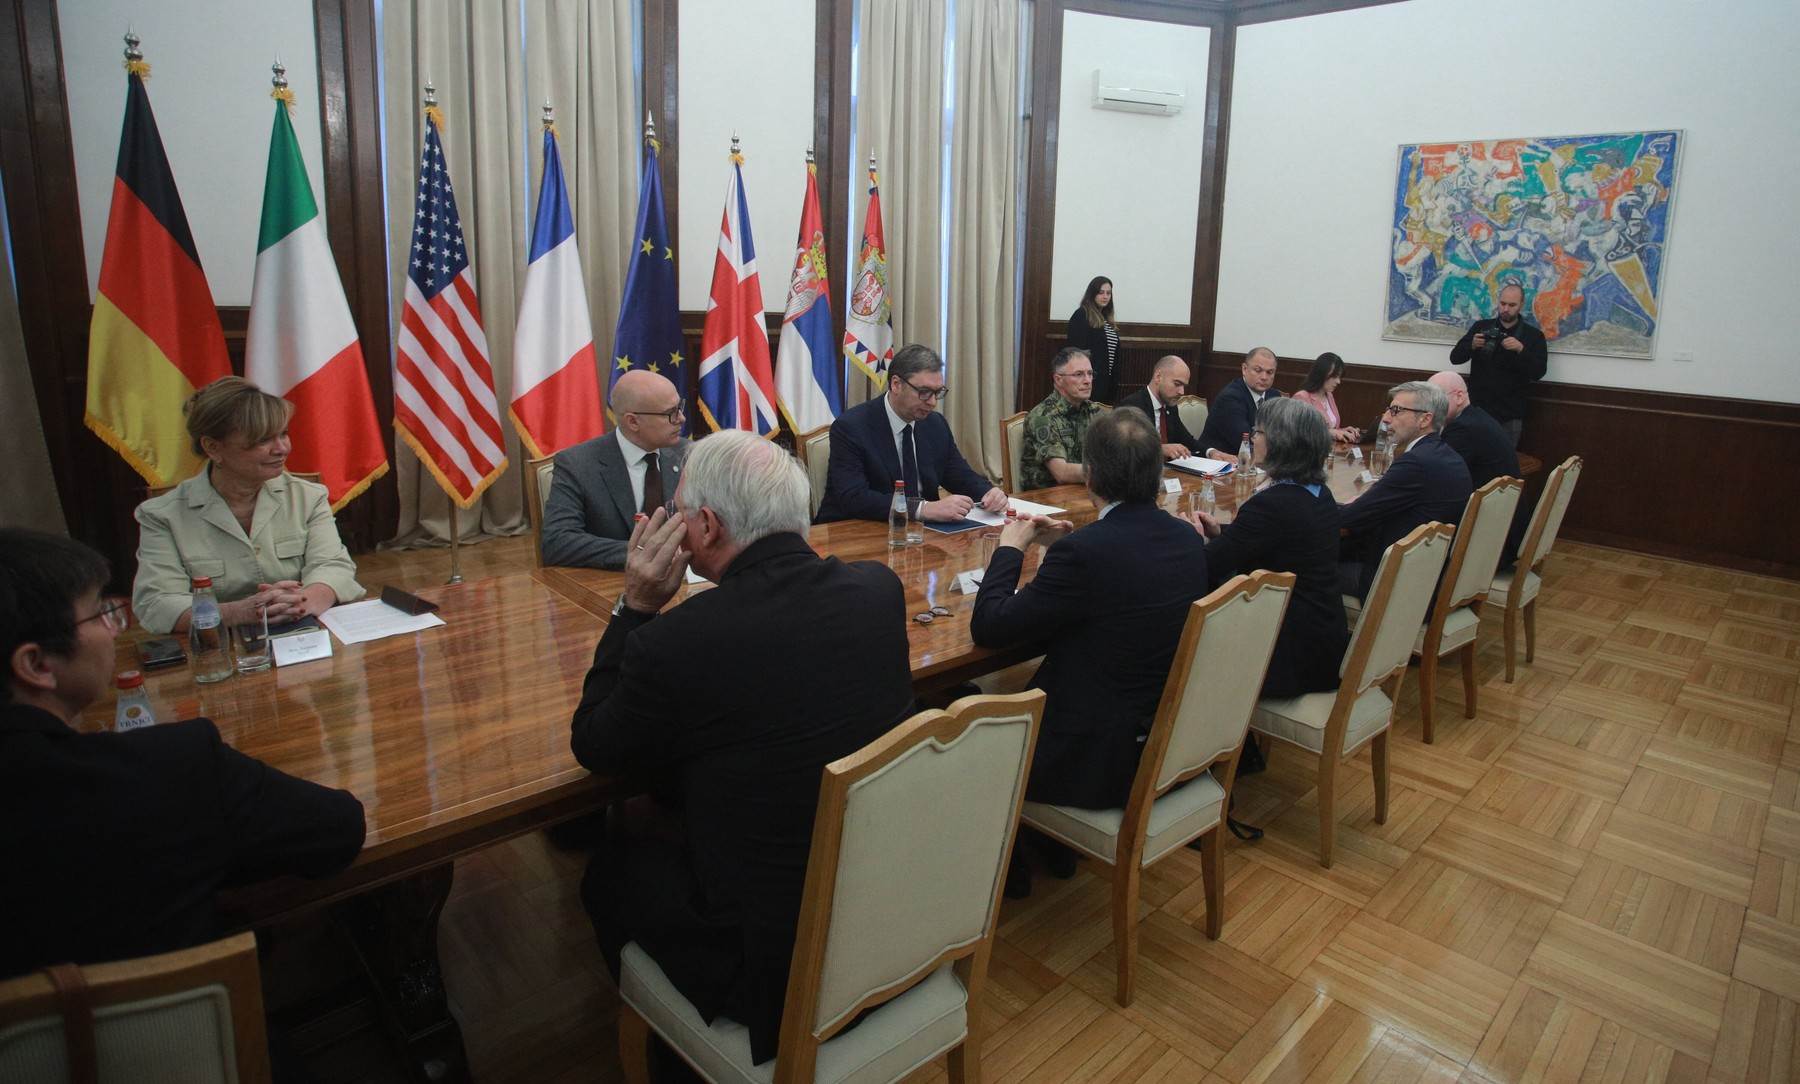  Sastanak srbijanskog predsjednika Aleksandra Vučića s predstavnicima zemalja Kvinte 